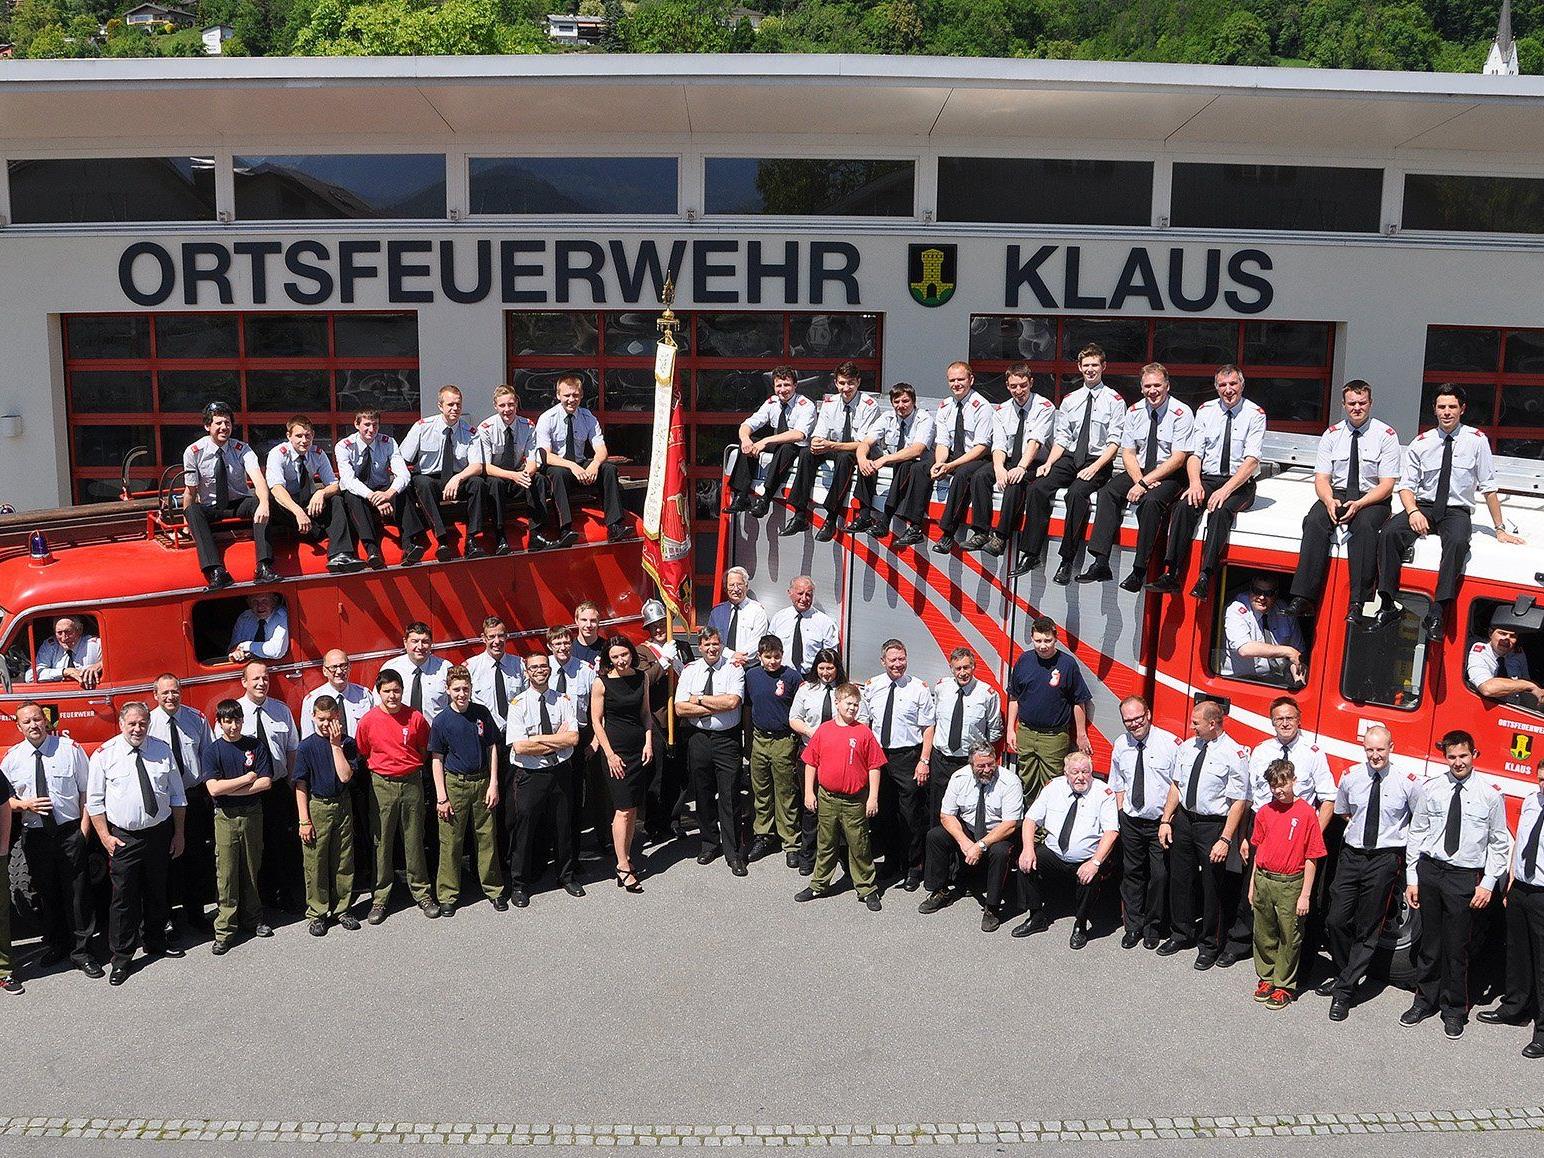 Die Ortsfeuerwehr Klaus lädt zum Jubiläumsfest am 6. September ein.